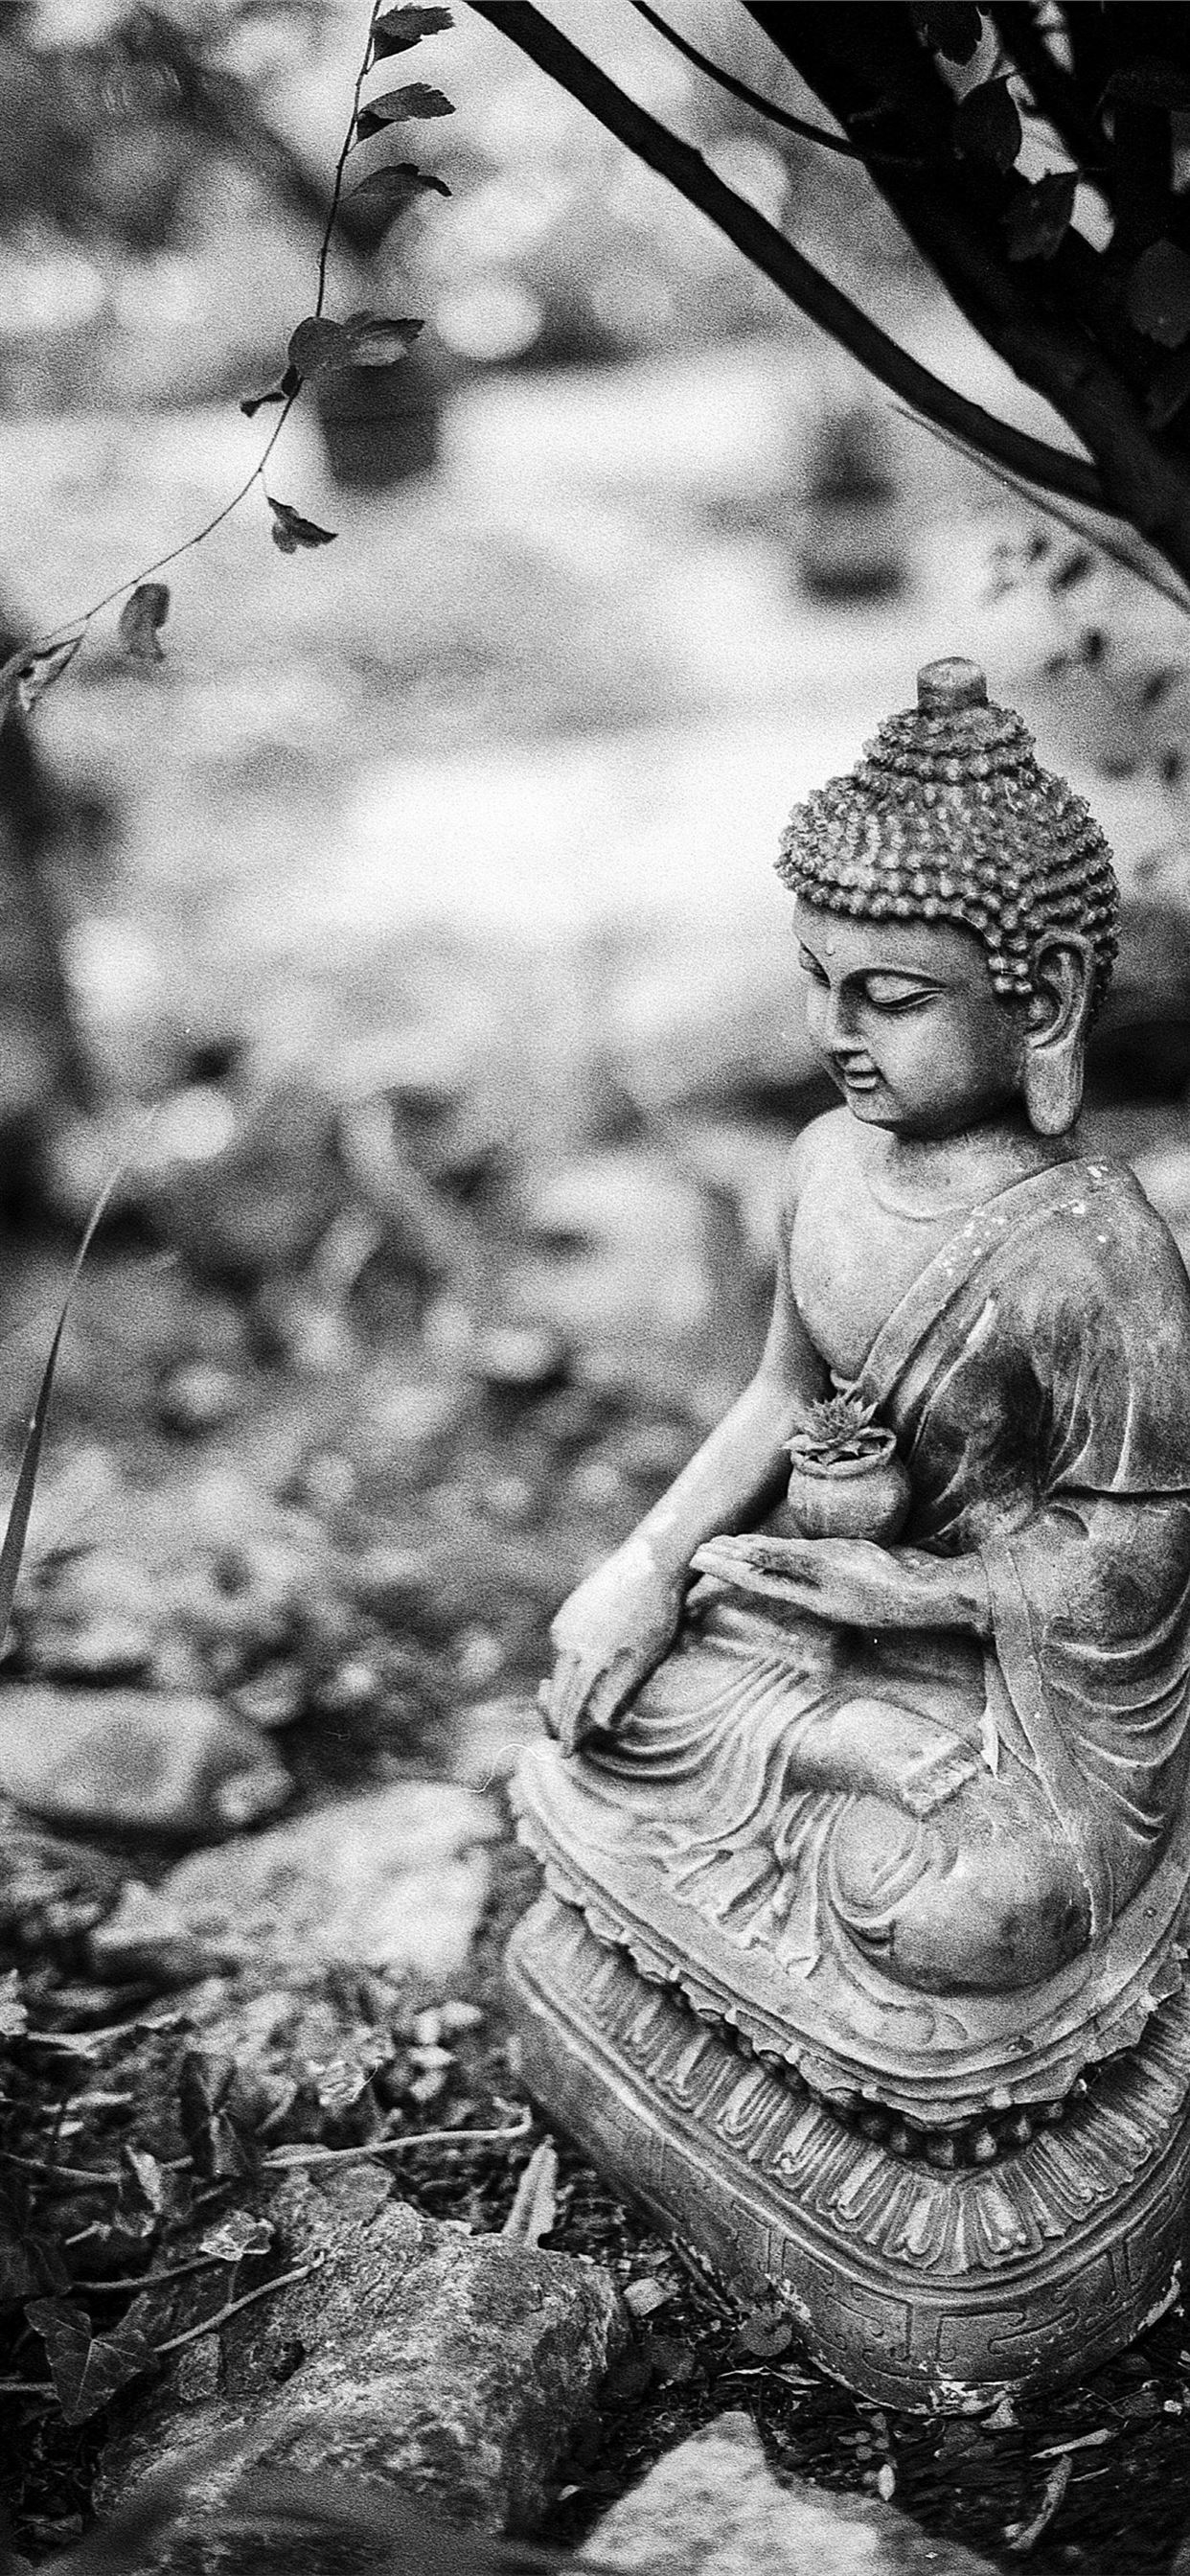 Buddha by Konimotsinui on DeviantArt